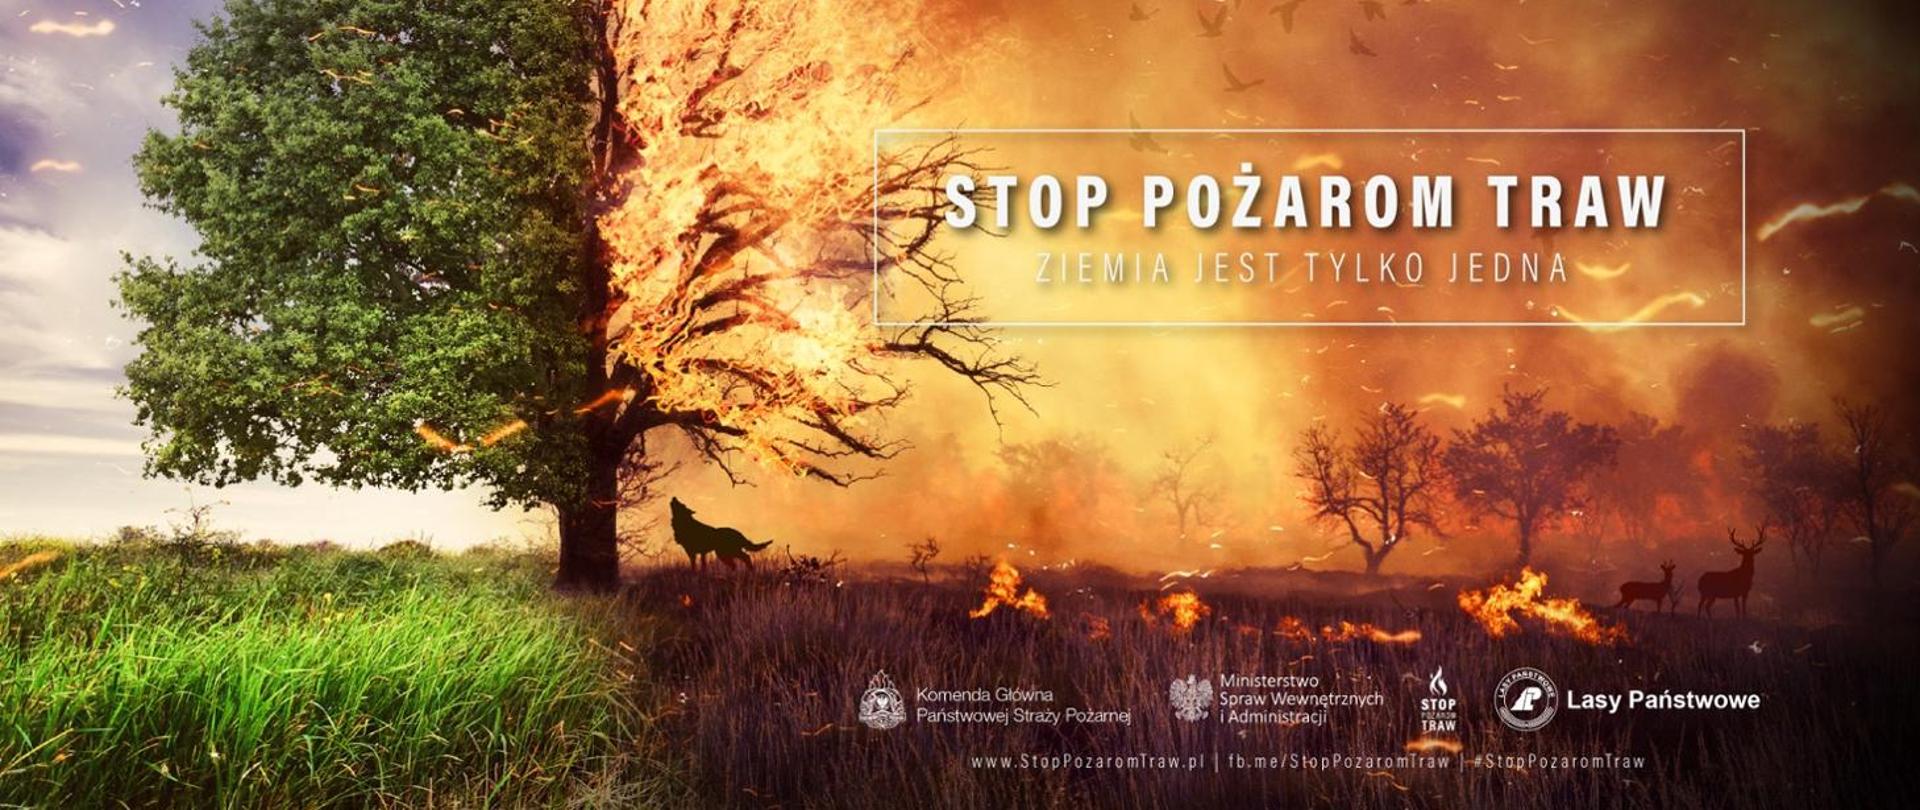 Plakat promujący kampanie Stop Pożarom Traw